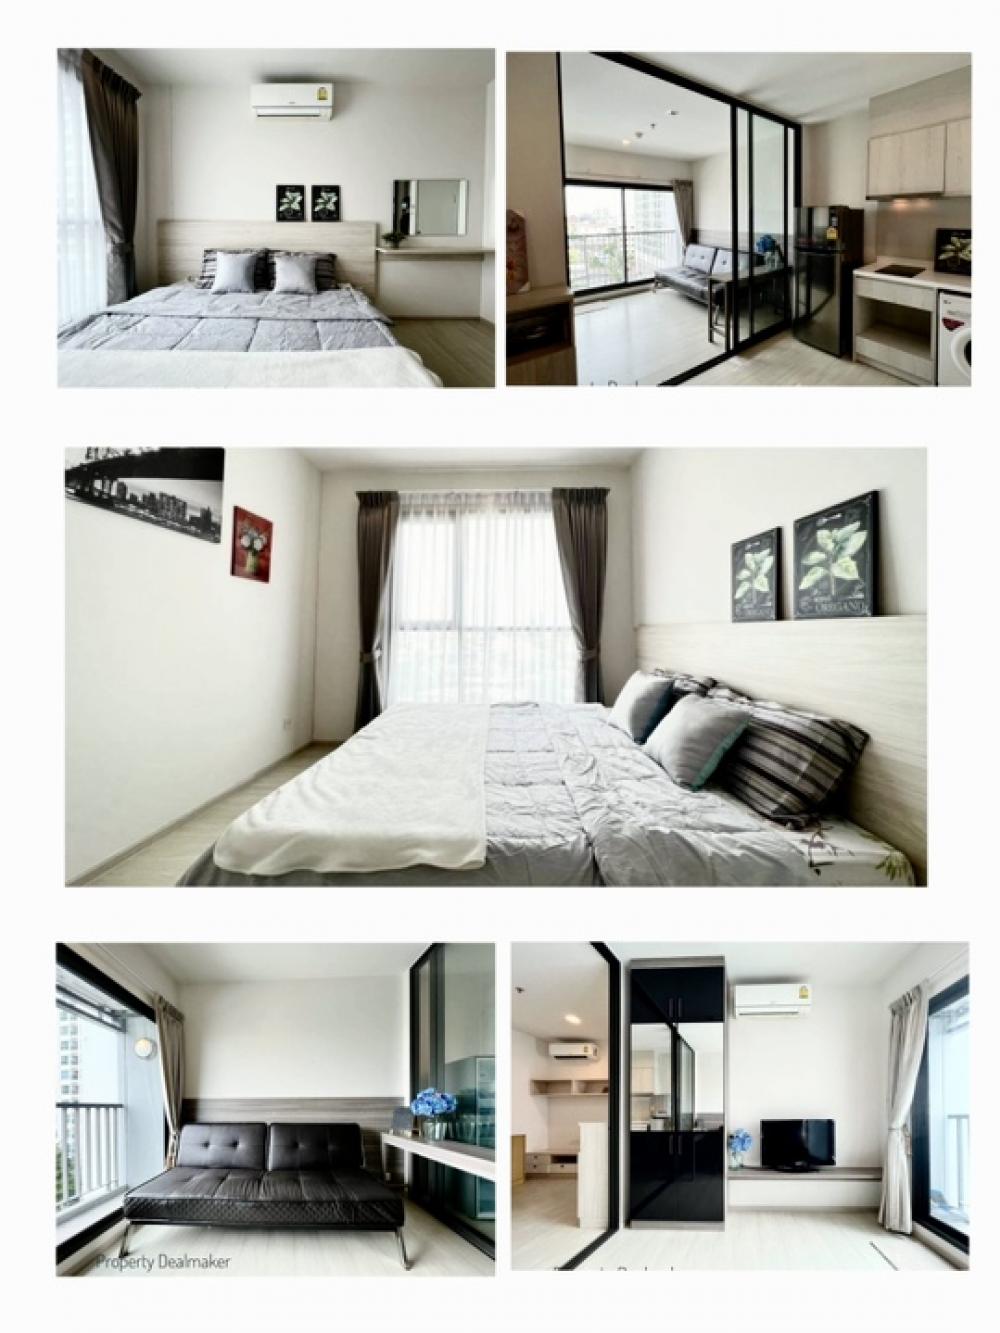 ให้เช่าคอนโดอ่อนนุช อุดมสุข : 🧡ว่างพร้อมอยู่ 01 กุมภา🧡💚LIFEสุขุมวิท 48💚แบบห้อง 1-Bed plus ✅ กว้างพิเศษ 40 ตารางเมตร ✅ ชั้น 6 🚊BTS พระโขนง 500 เมตร🧡ได้ 1-ห้องนอนใหญ่ + 1-ห้องทำงาน🧡